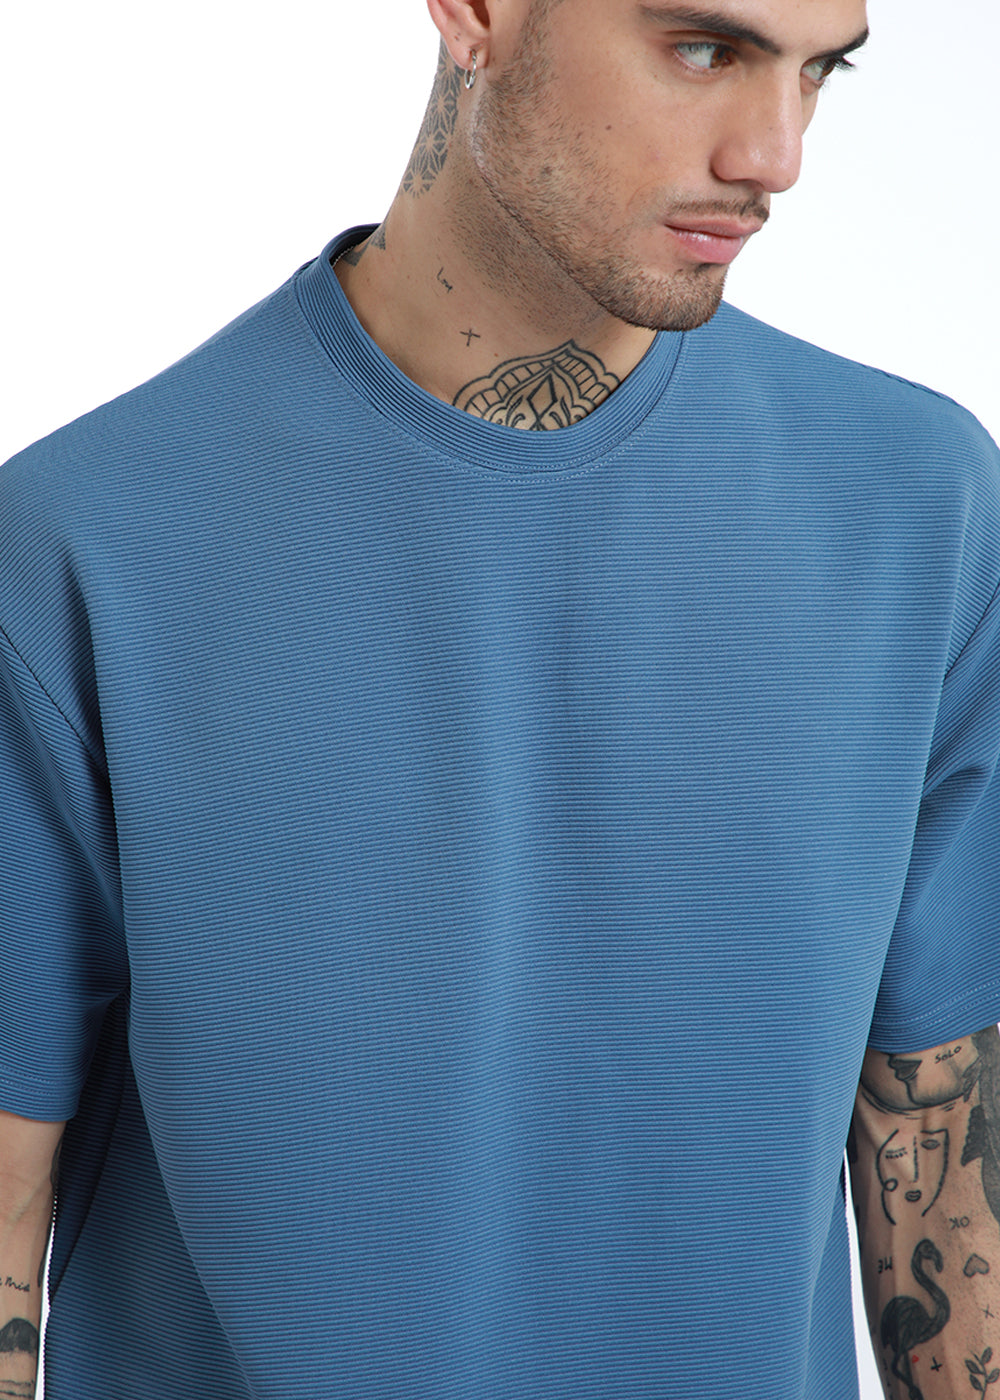 Oversized Blue Textured T-shirt